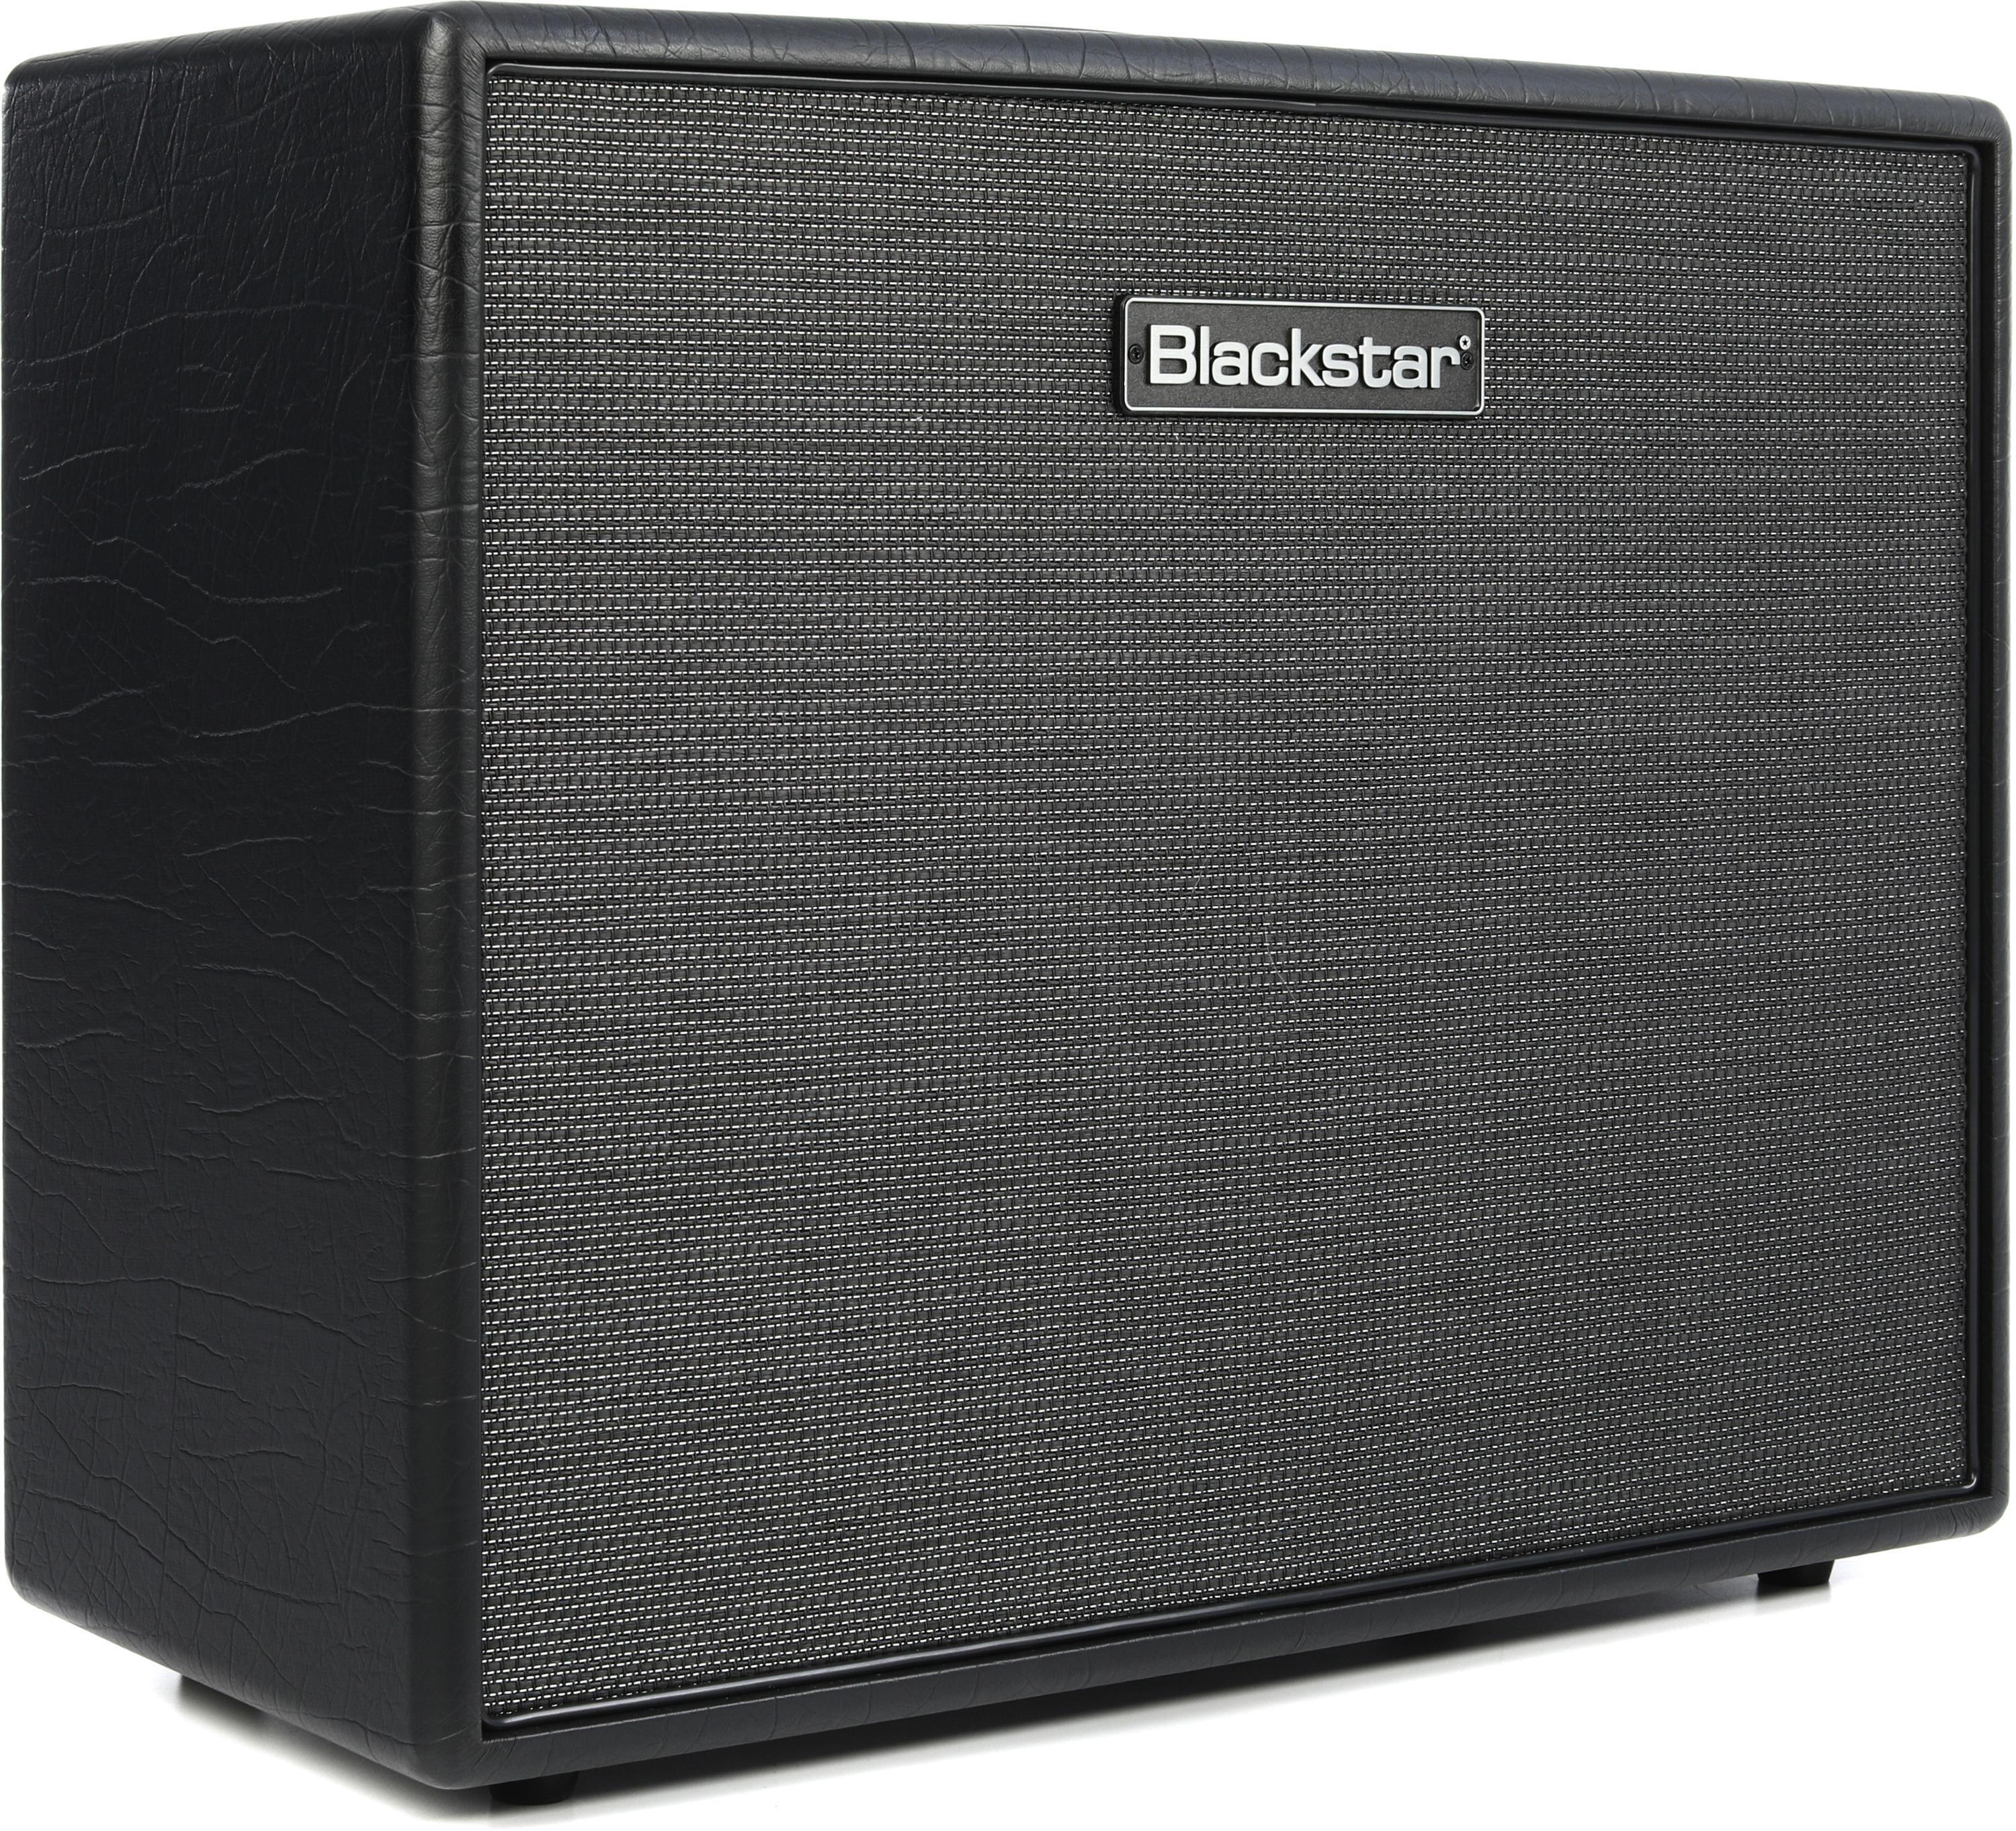 Blackstar HTV-112 MK III 80-watt 1 x 12-inch Extension Cabinet